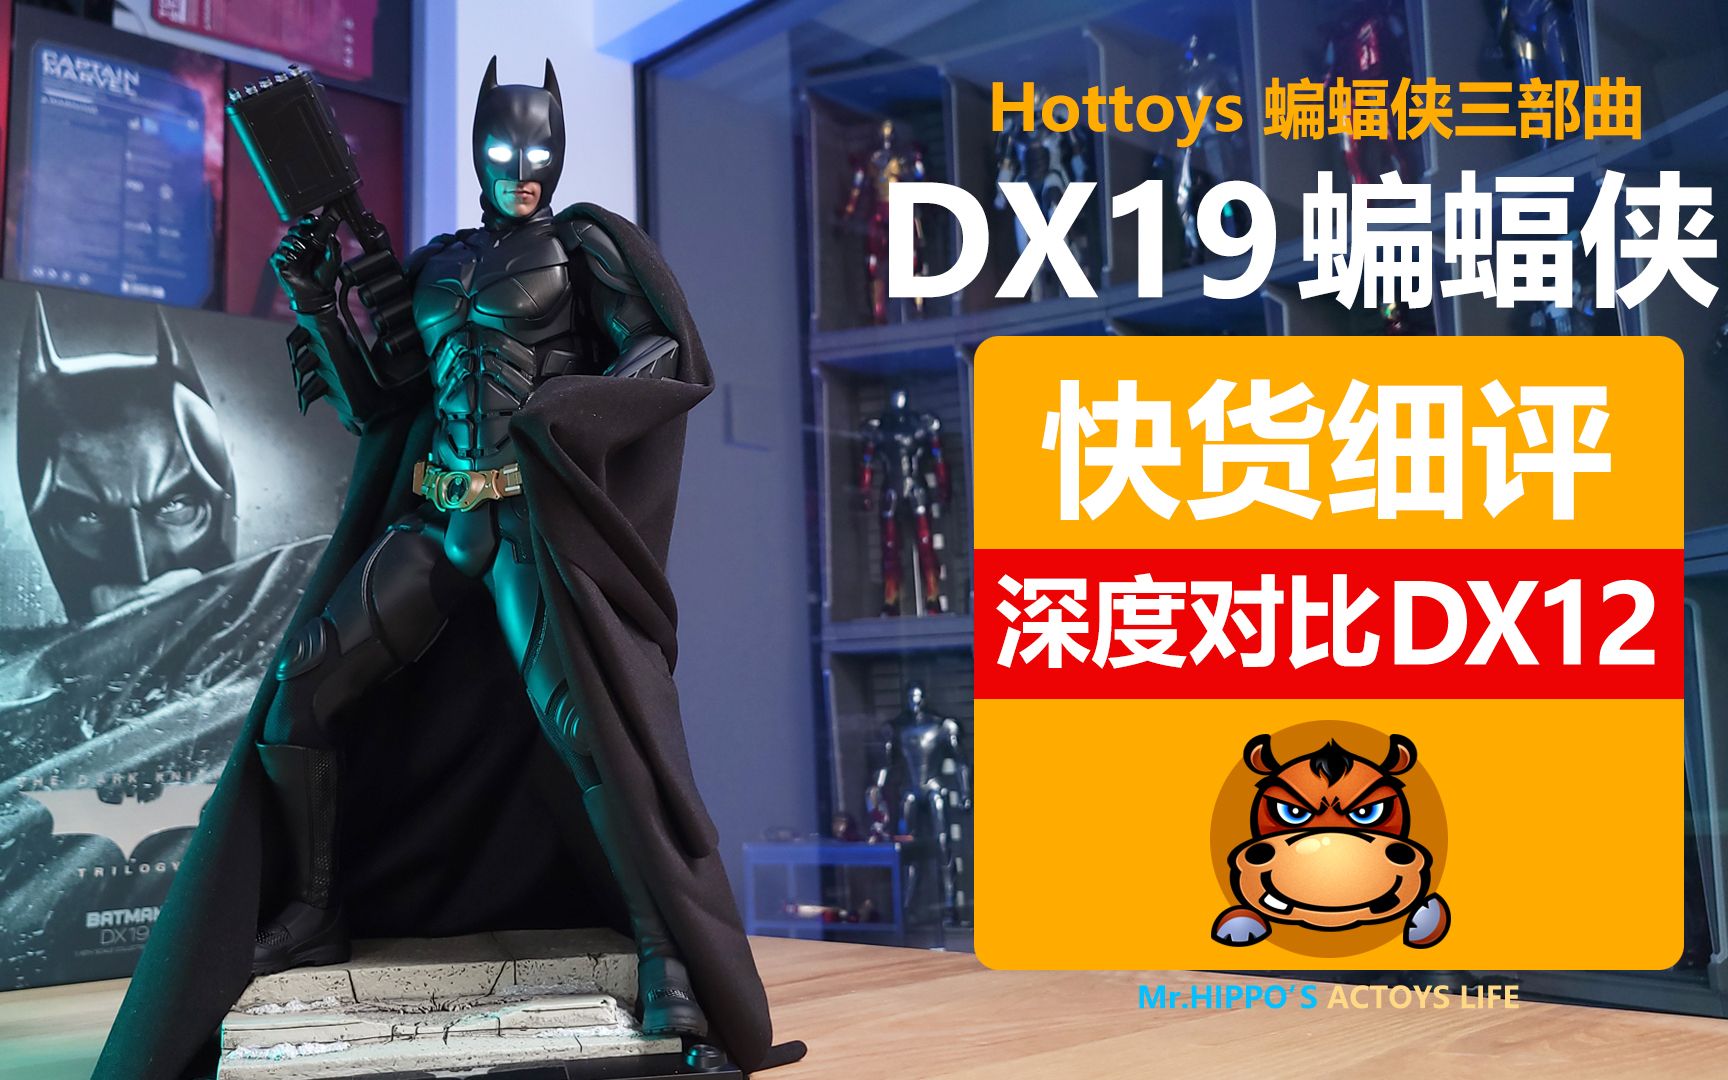 【河马细评】Hottoys HT 1/6 DX19 蝙蝠侠 深度对比DX12 DC诺兰贝尔黑暗骑士三部曲 拆盒分享测评评测